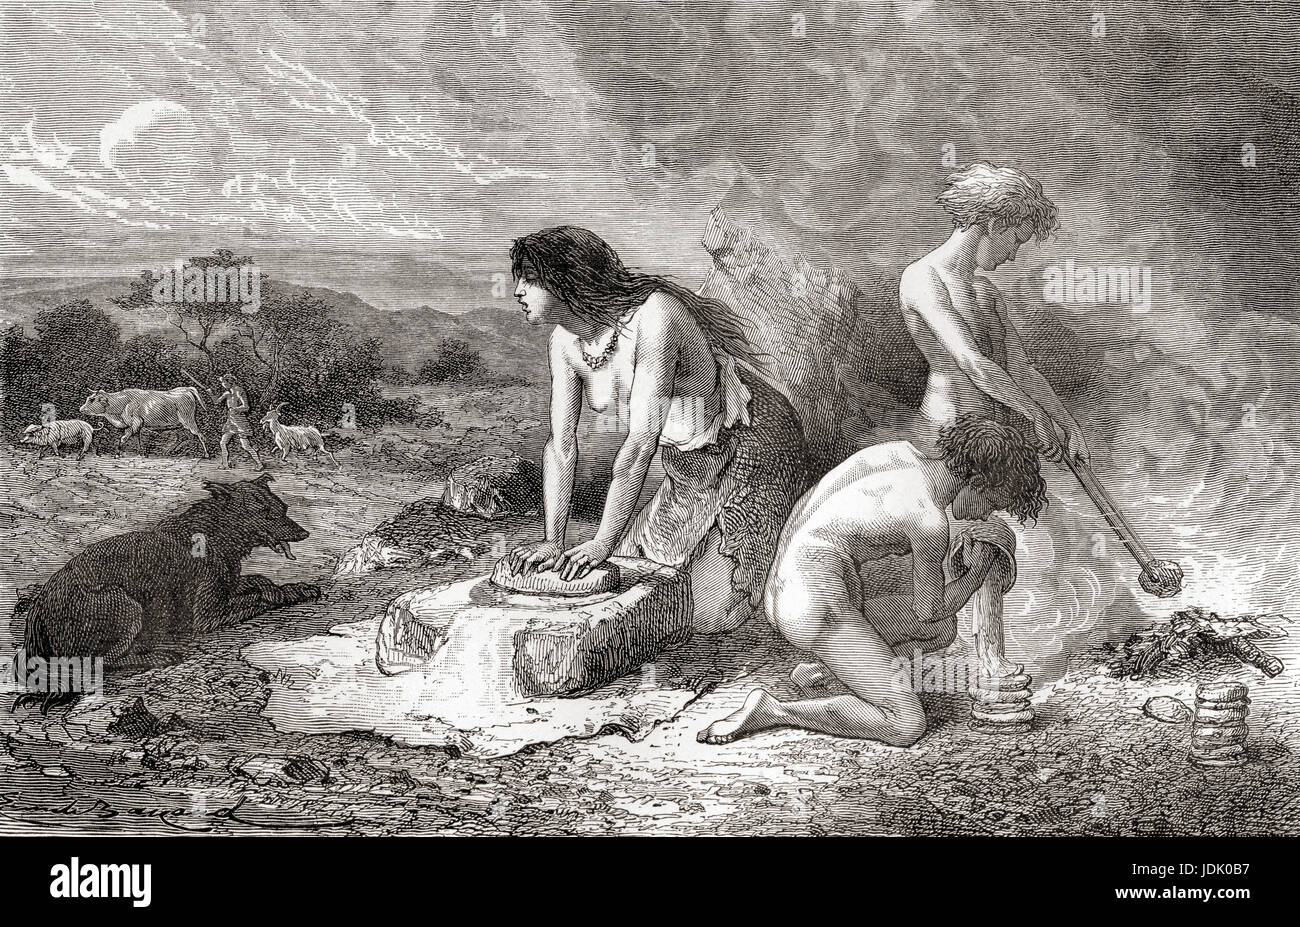 Hacer pan durante el Neolítico aka Nueva Edad de Piedra o edad de la piedra pulida. A partir de l'Homme Primitif, publicado el 1870. Foto de stock